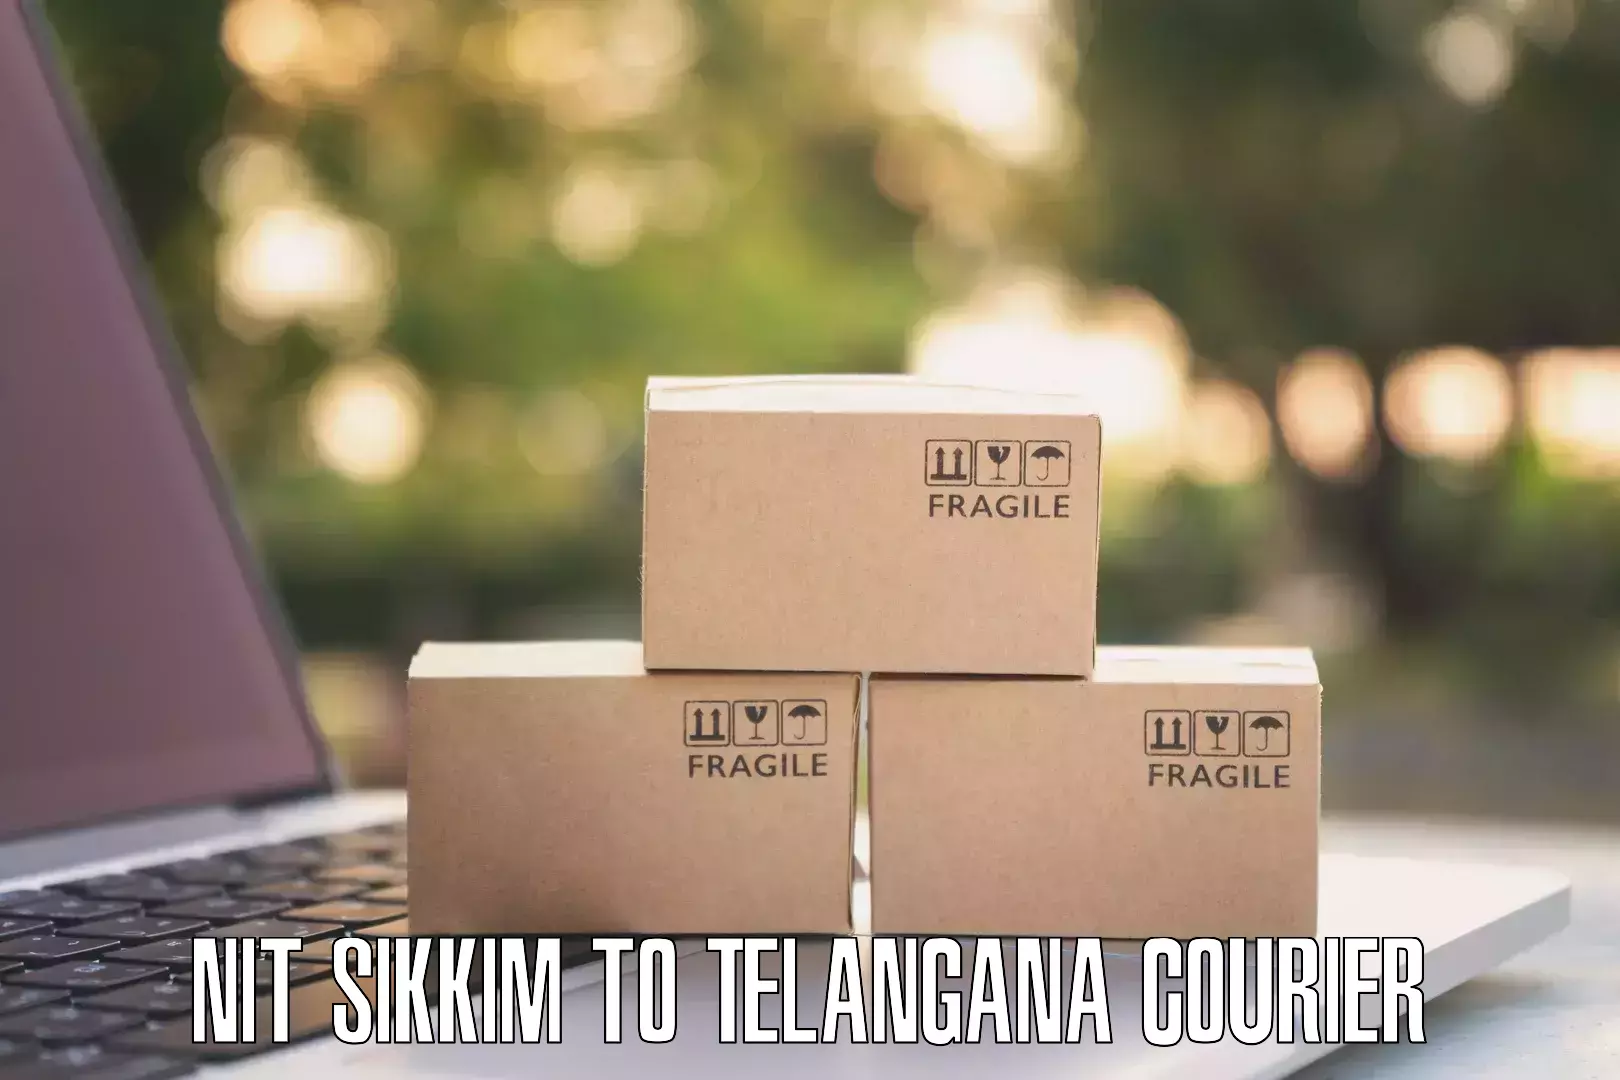 Express courier facilities NIT Sikkim to Telangana